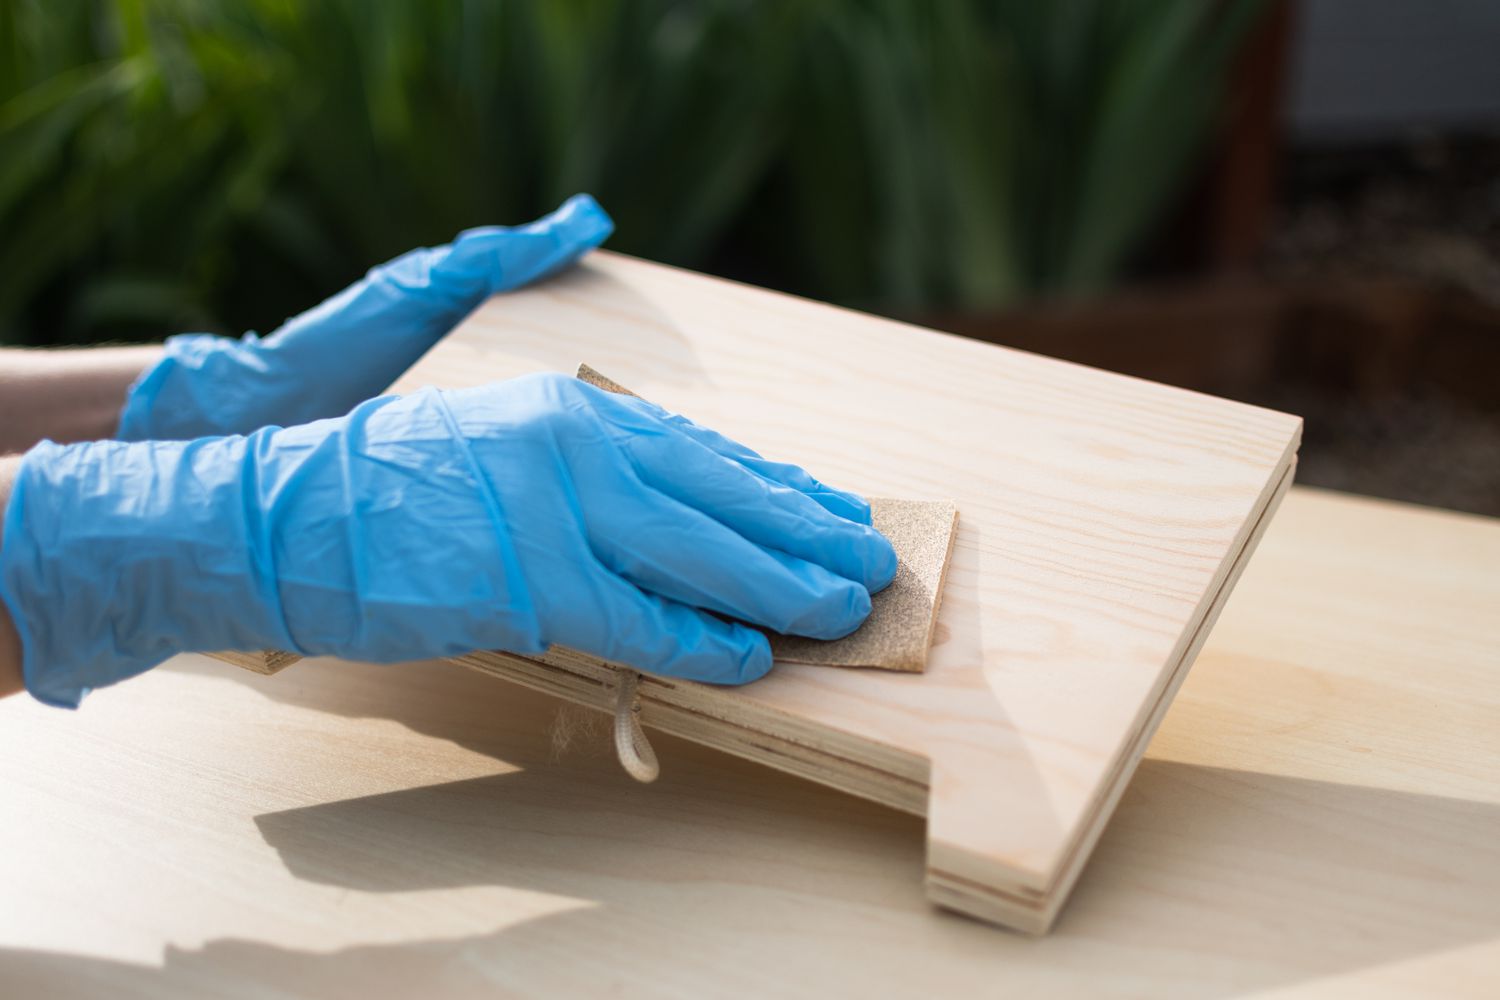 Holzschild mit feinem Schleifpapier und blauen Handschuhen abgeschliffen